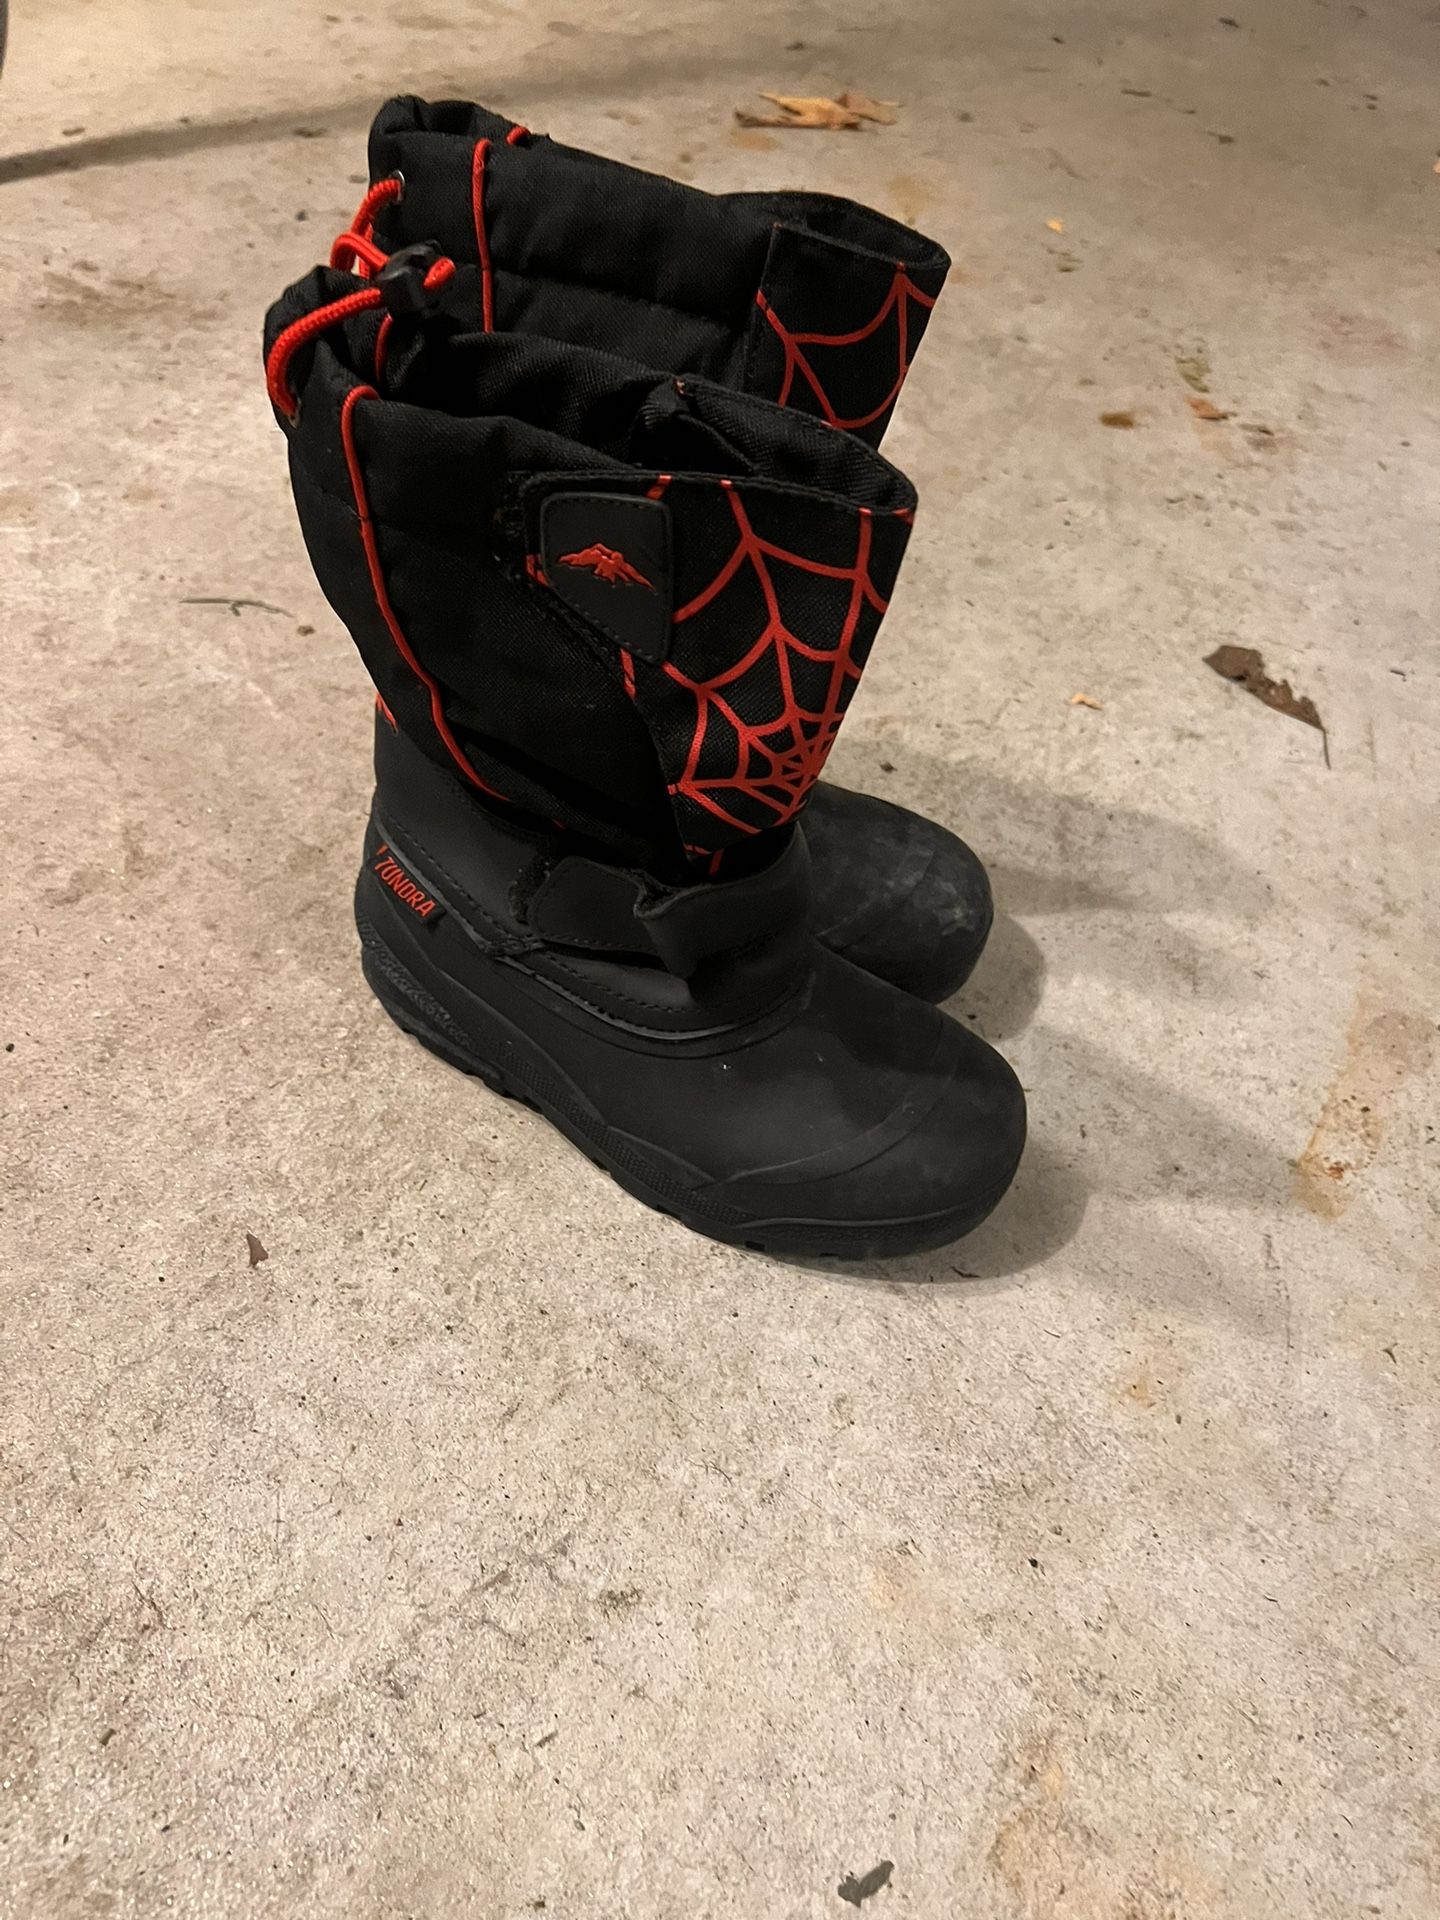 Kids Spider-Man Snow Boots.  Size 2